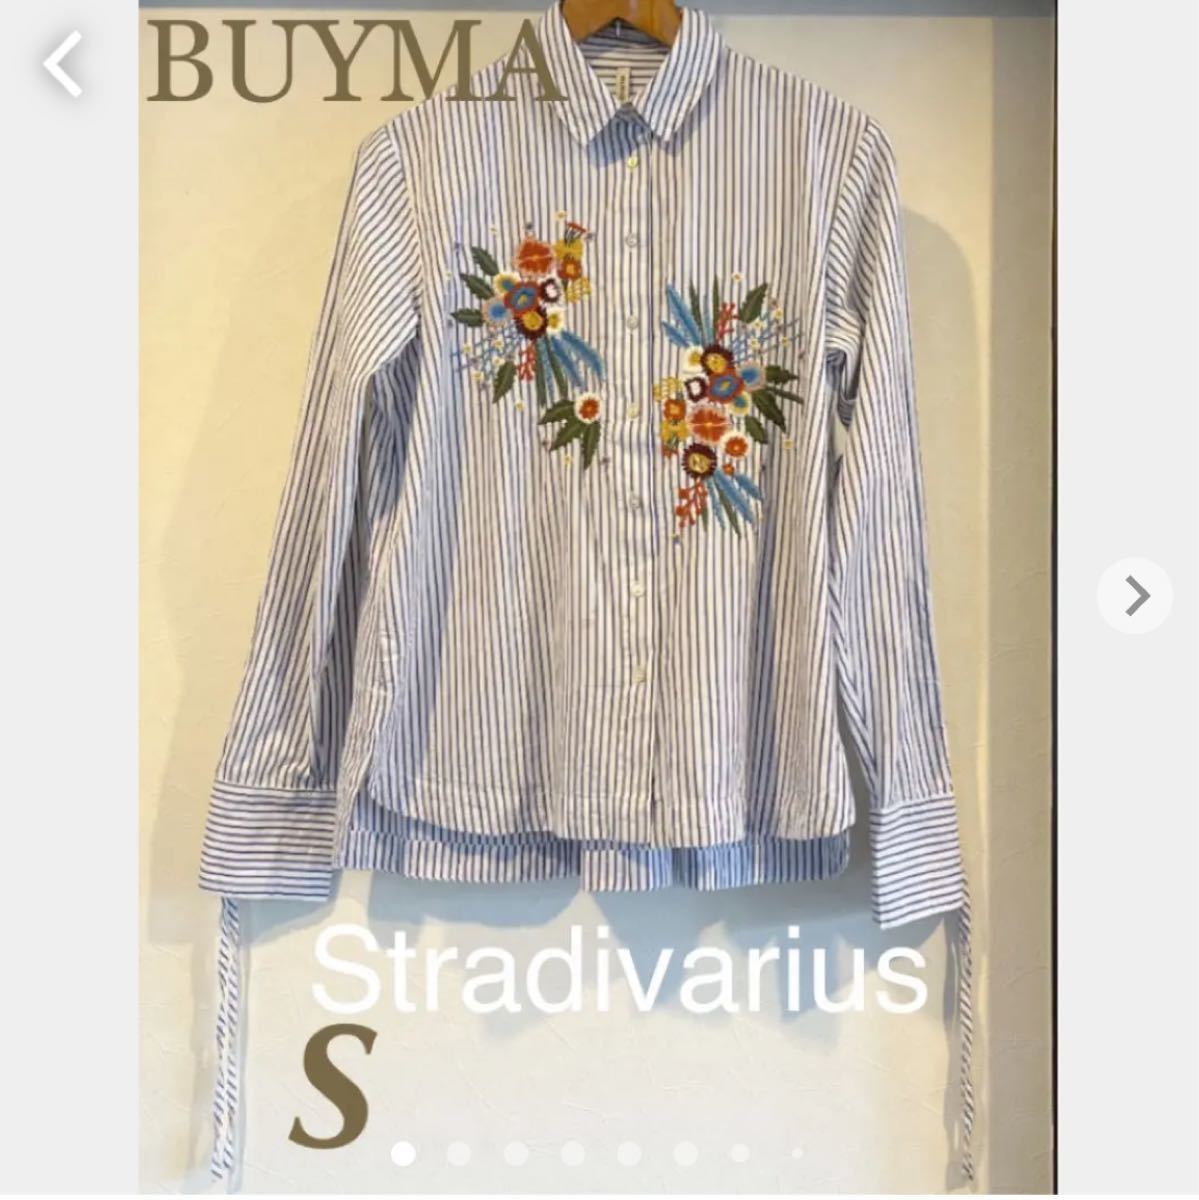 【BUYMA】Stradivariusビッグ刺繍ストライプブラウス